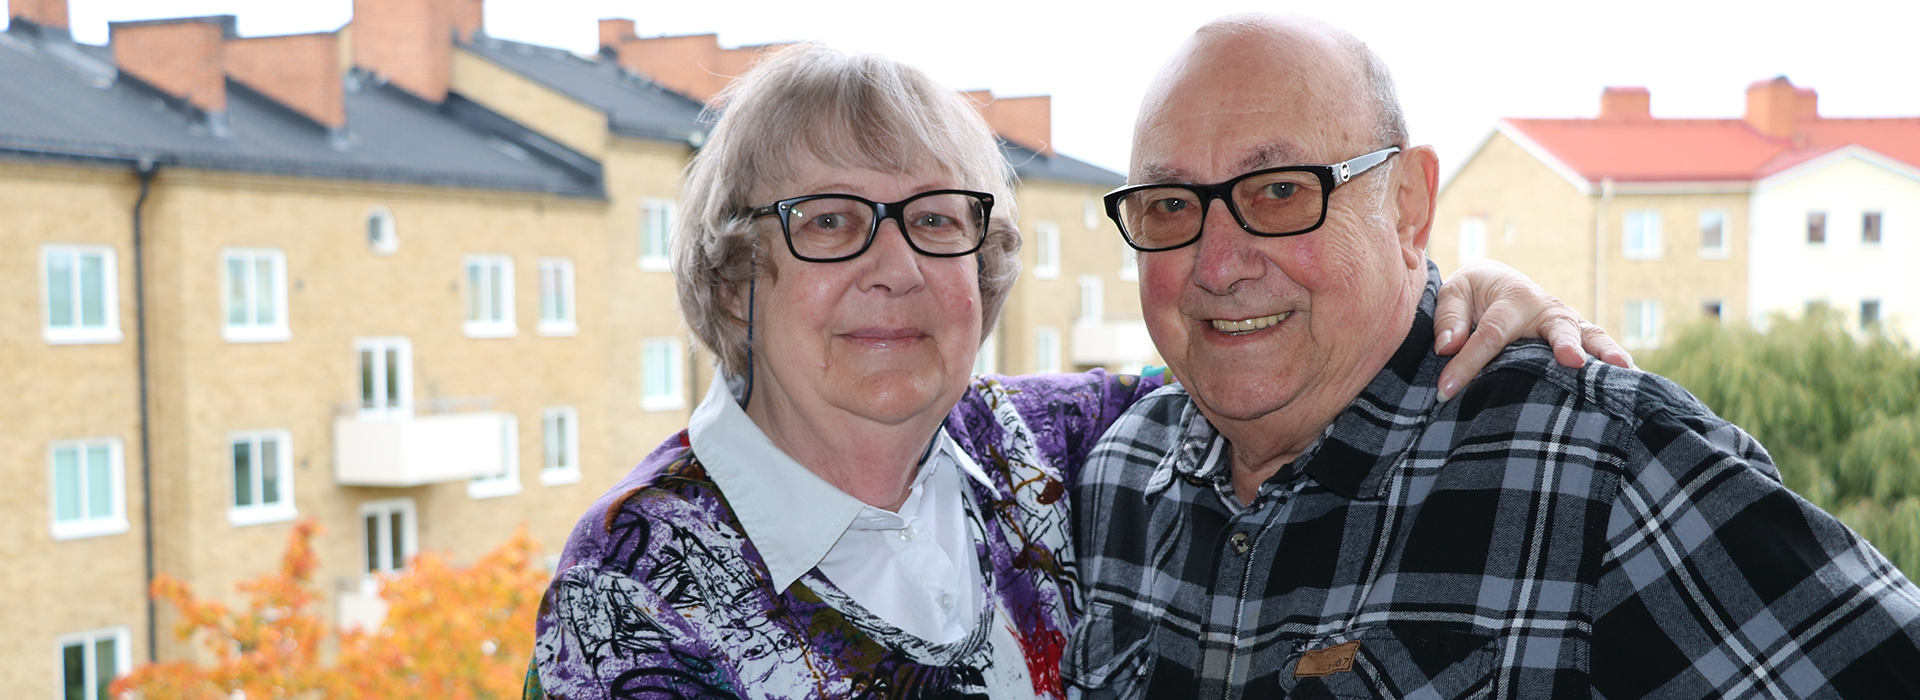 Ett äldre par står på en balkong